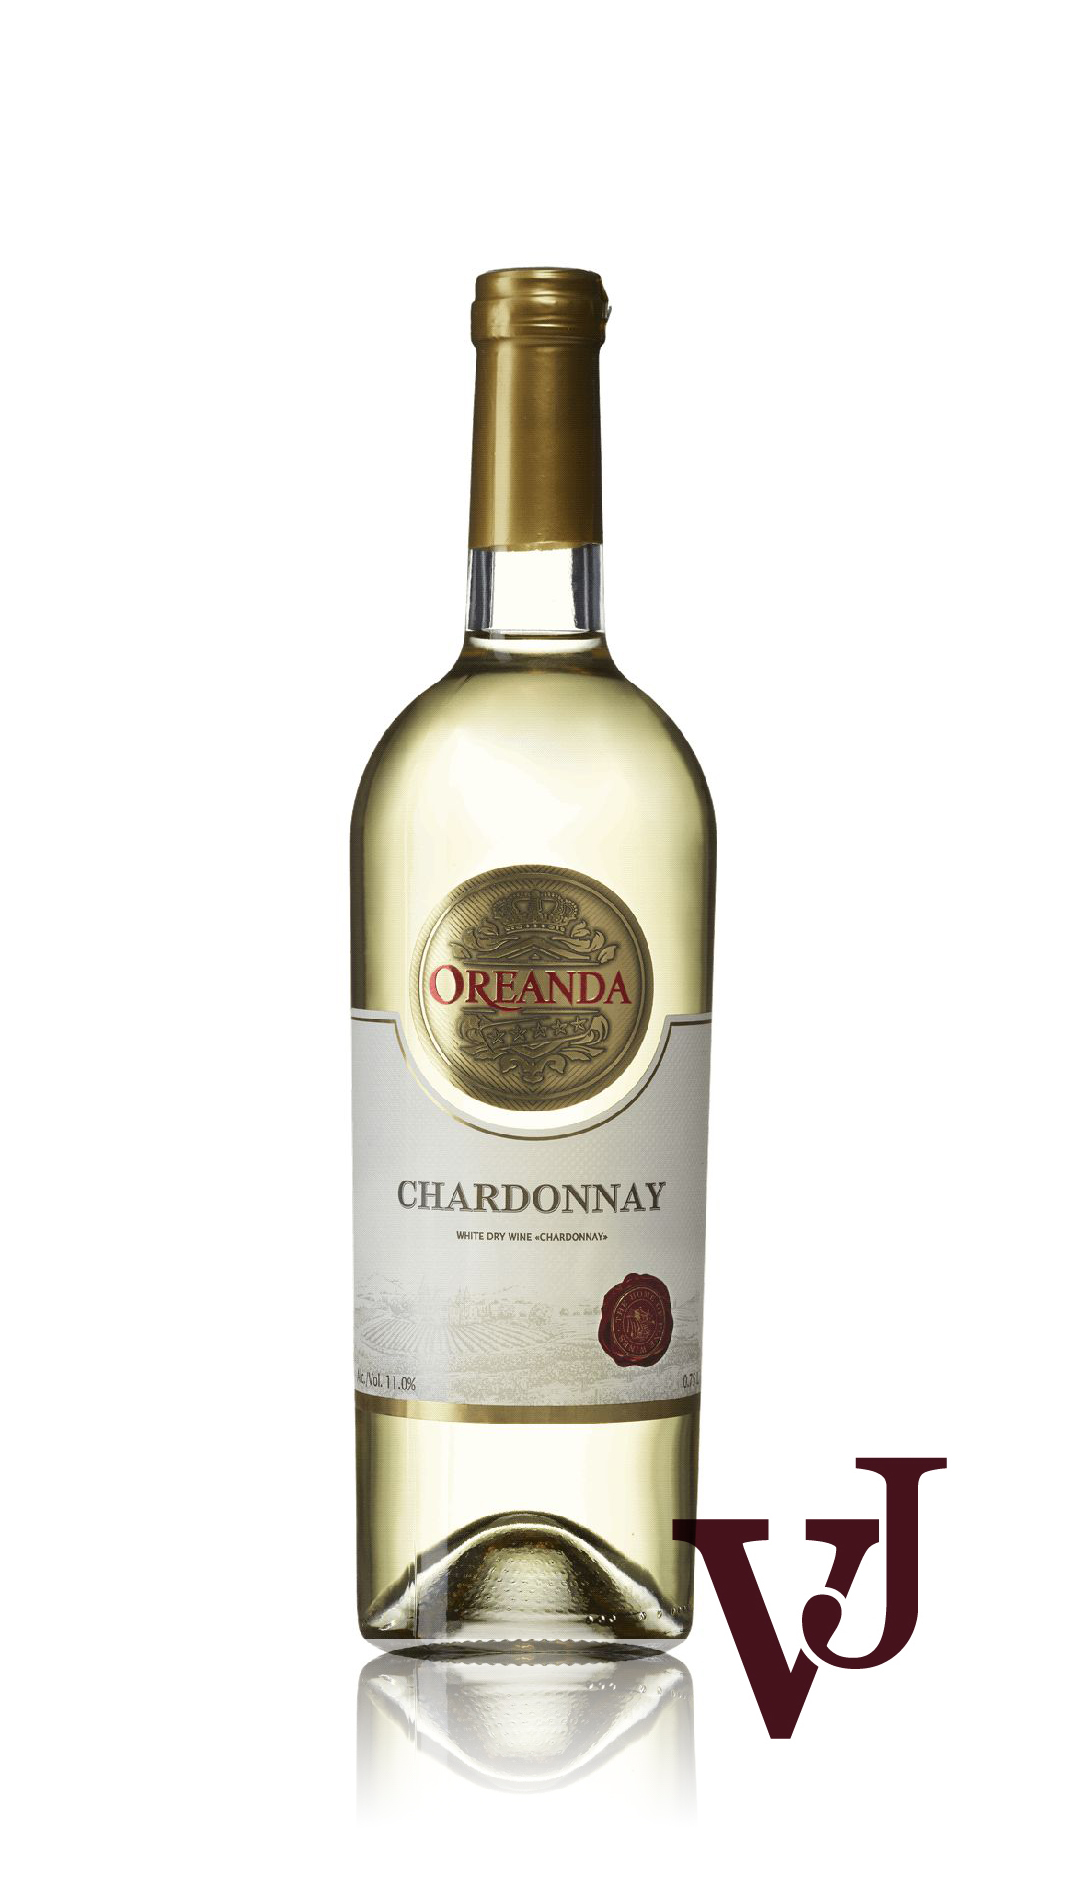 Vitt Vin - Oreanda Chardonnay artikel nummer 5874001 från producenten Flatelli Winery LLC från Ukraina.